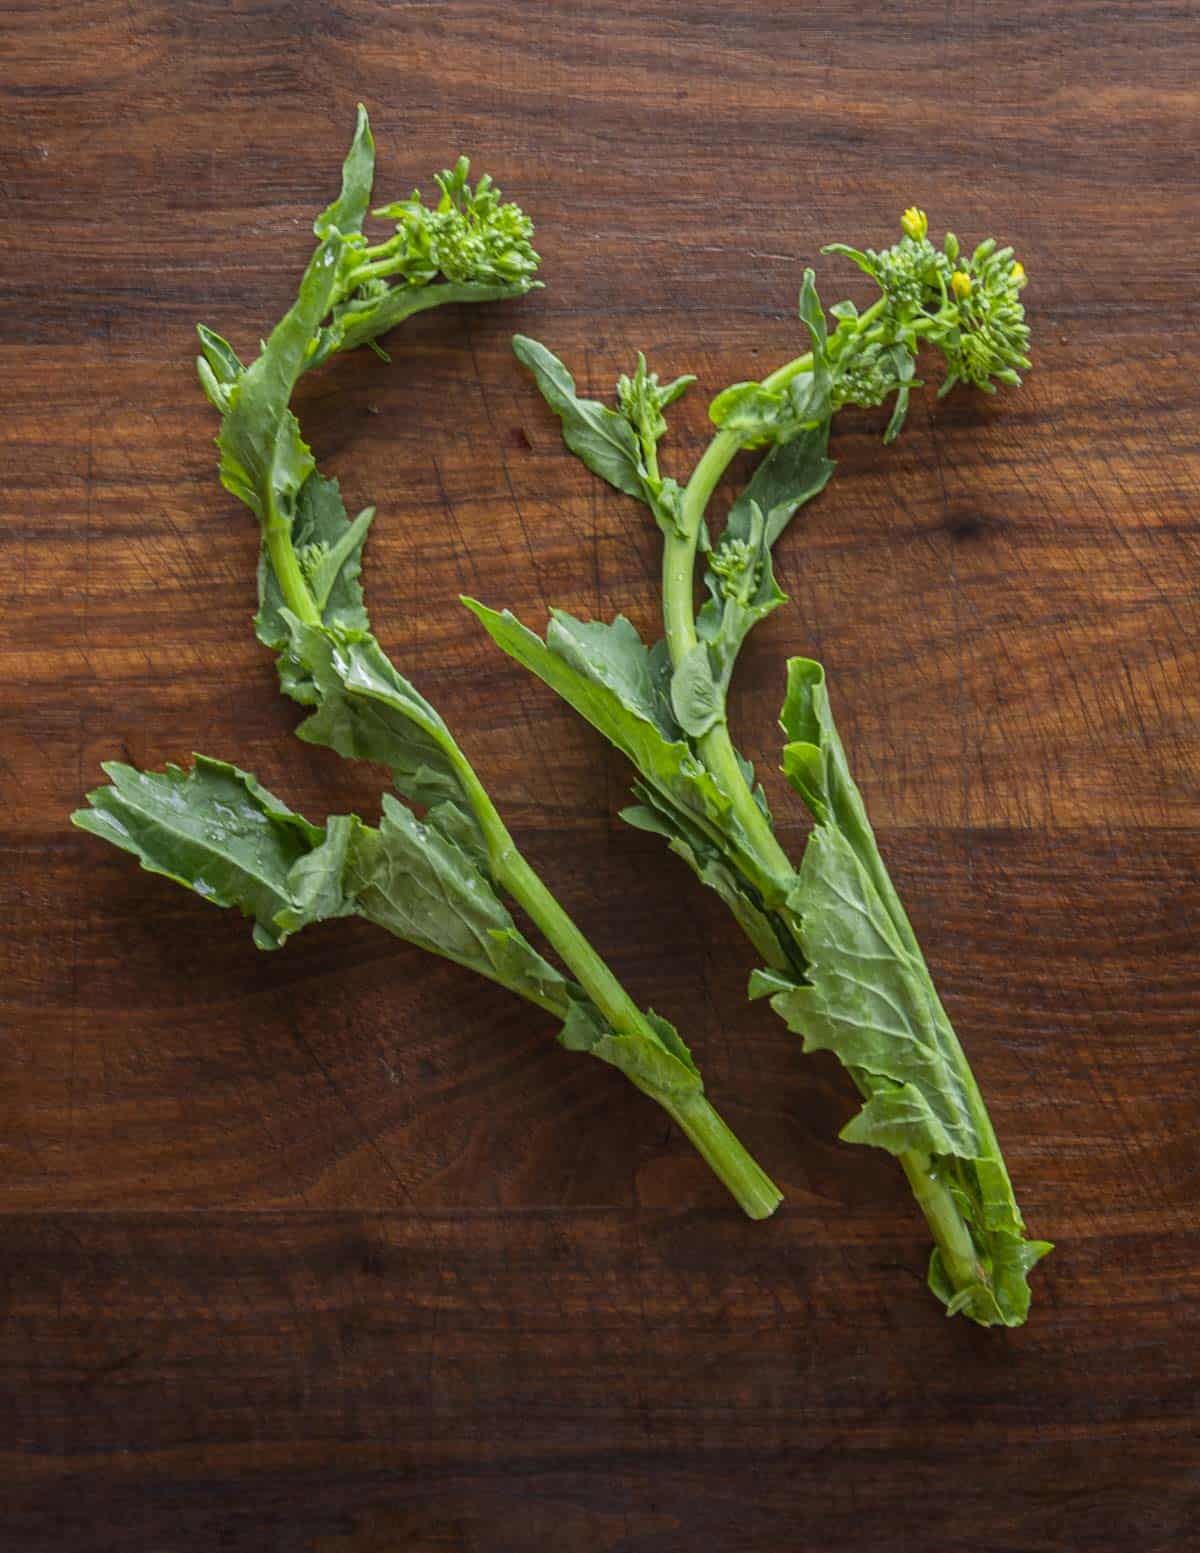 Rapini or broccoli rabe stalks on a cutting board.